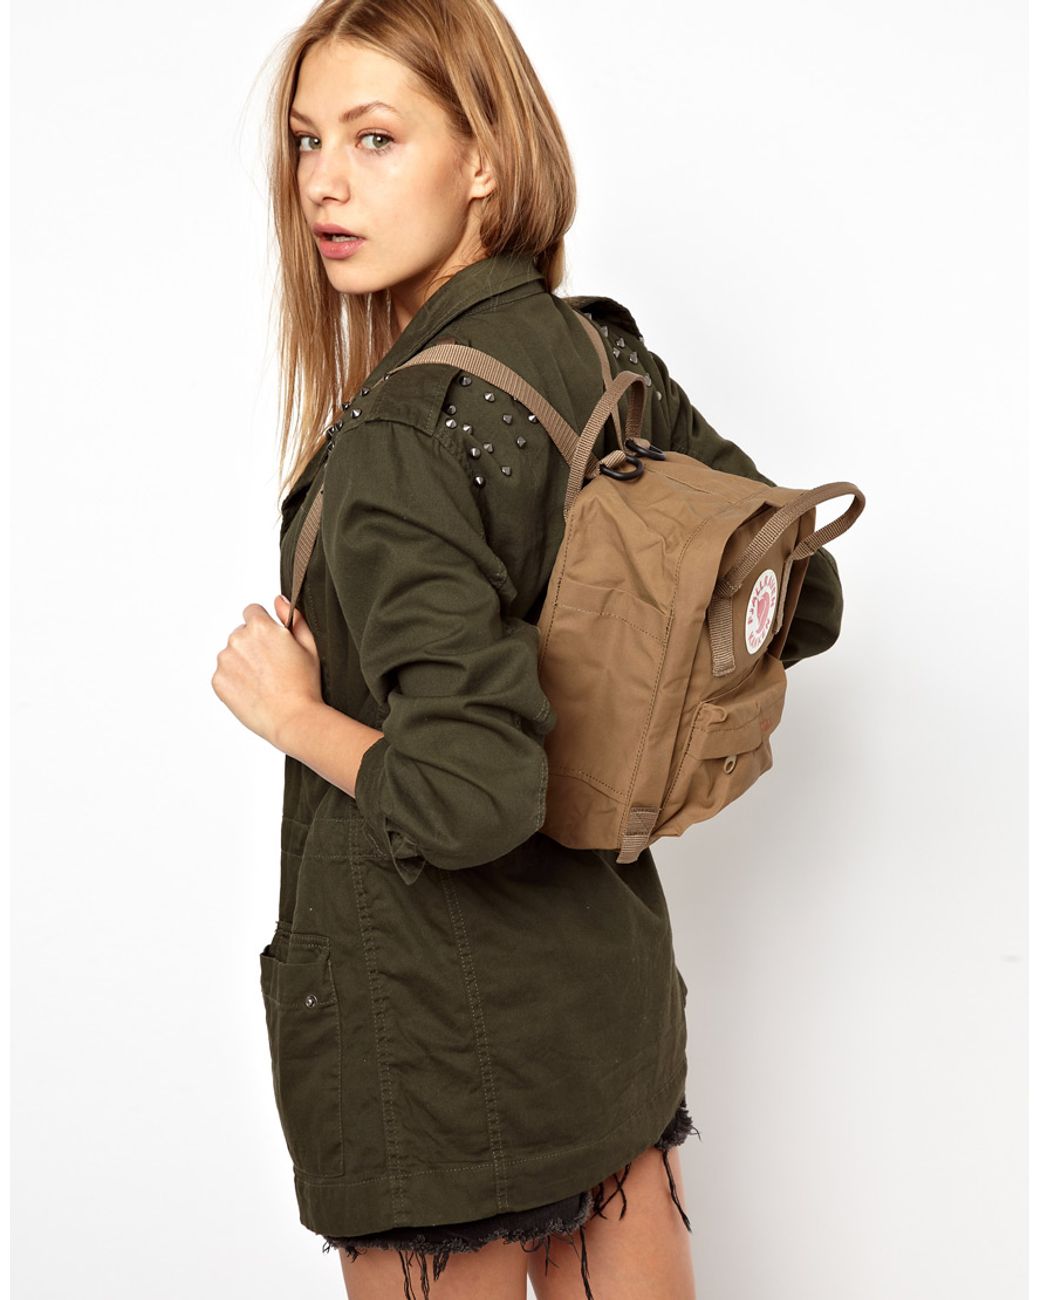 Fjallraven Mini Backpack in Brown for Men | Lyst